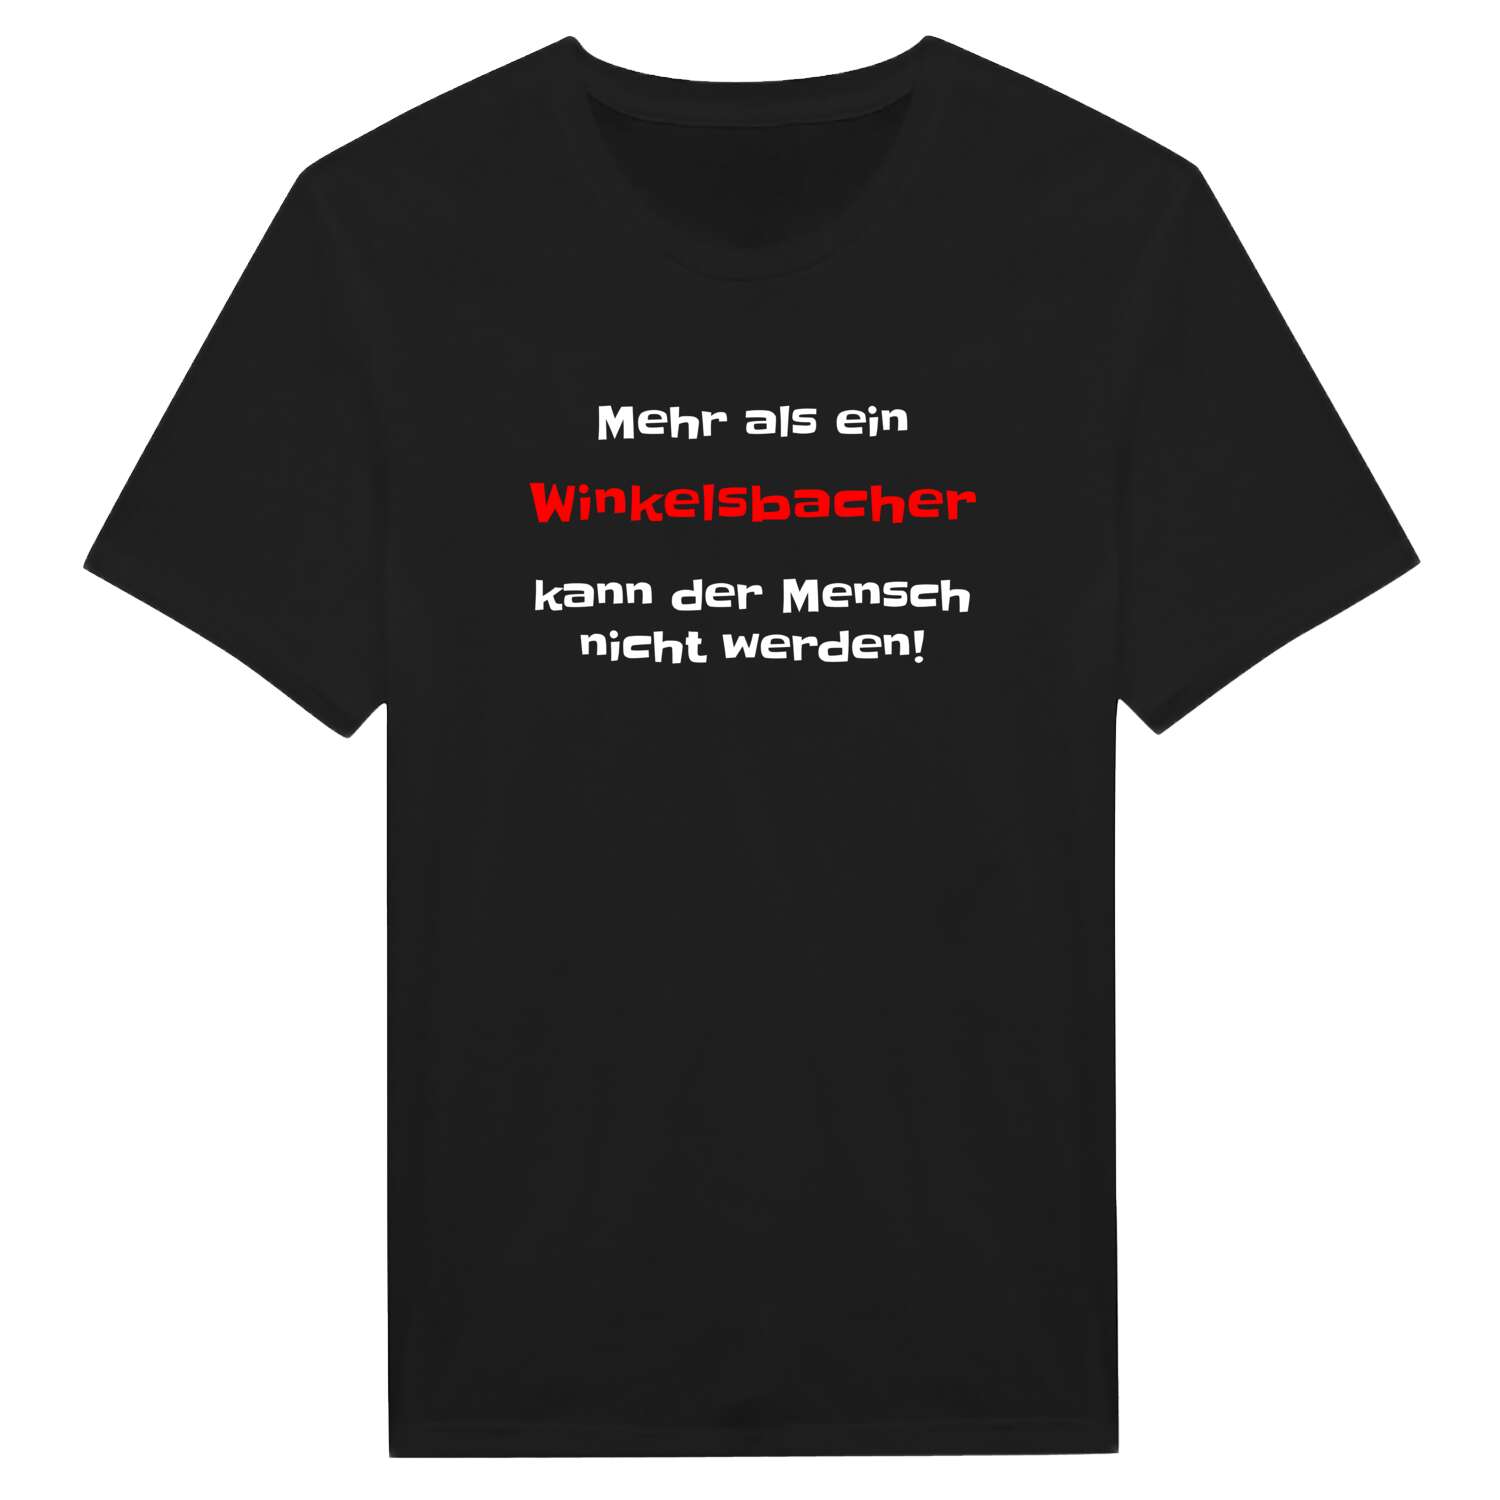 Winkelsbach T-Shirt »Mehr als ein«